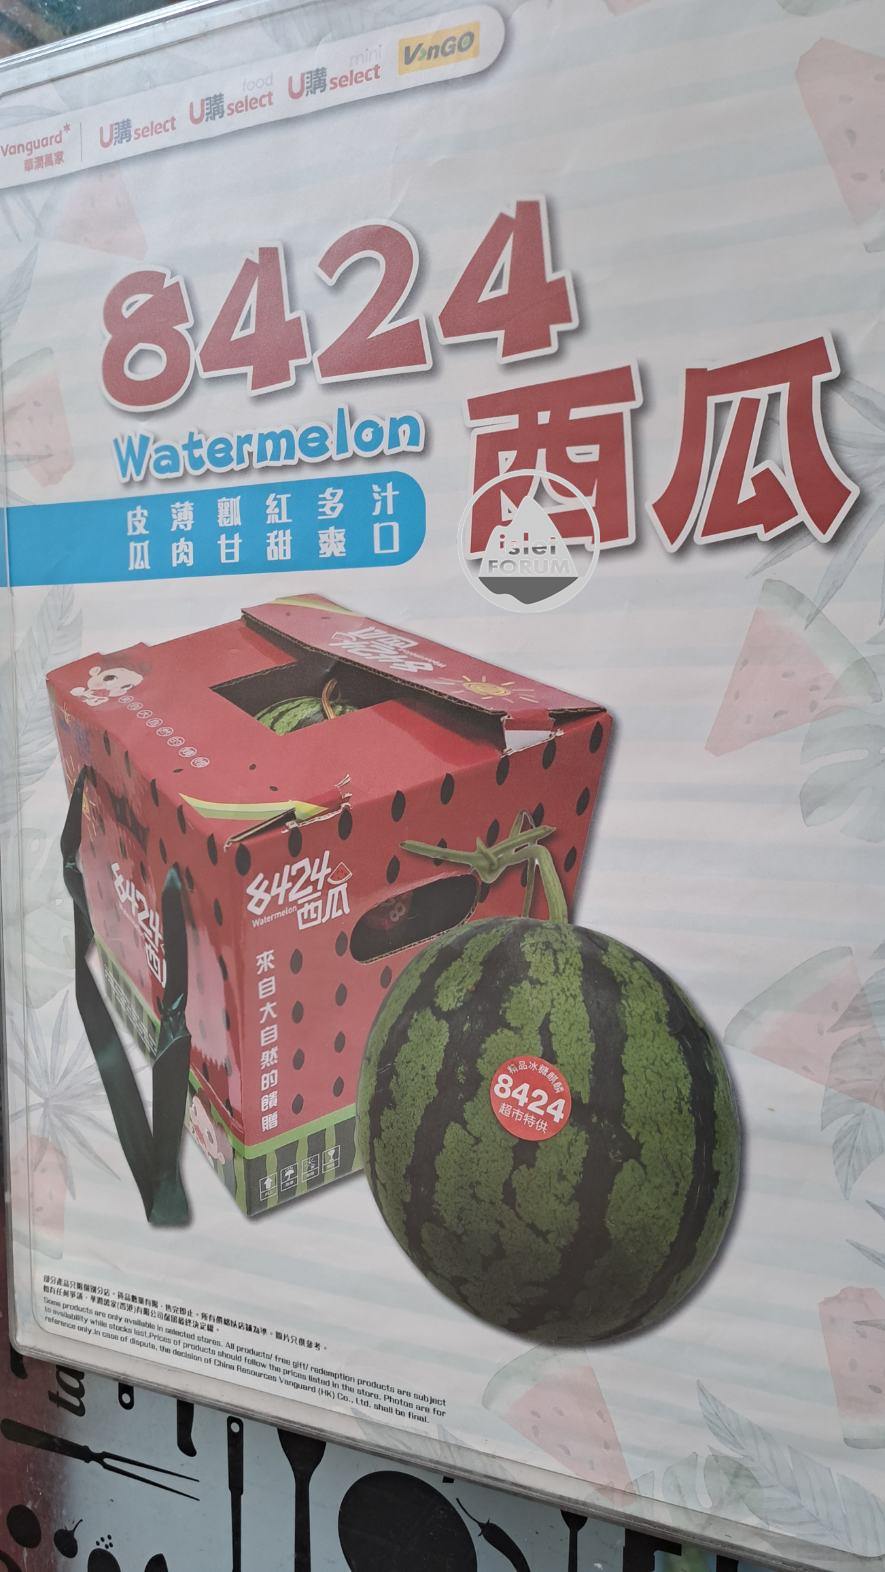 8424西瓜Watermelon，四方盒圓形西瓜.jpg